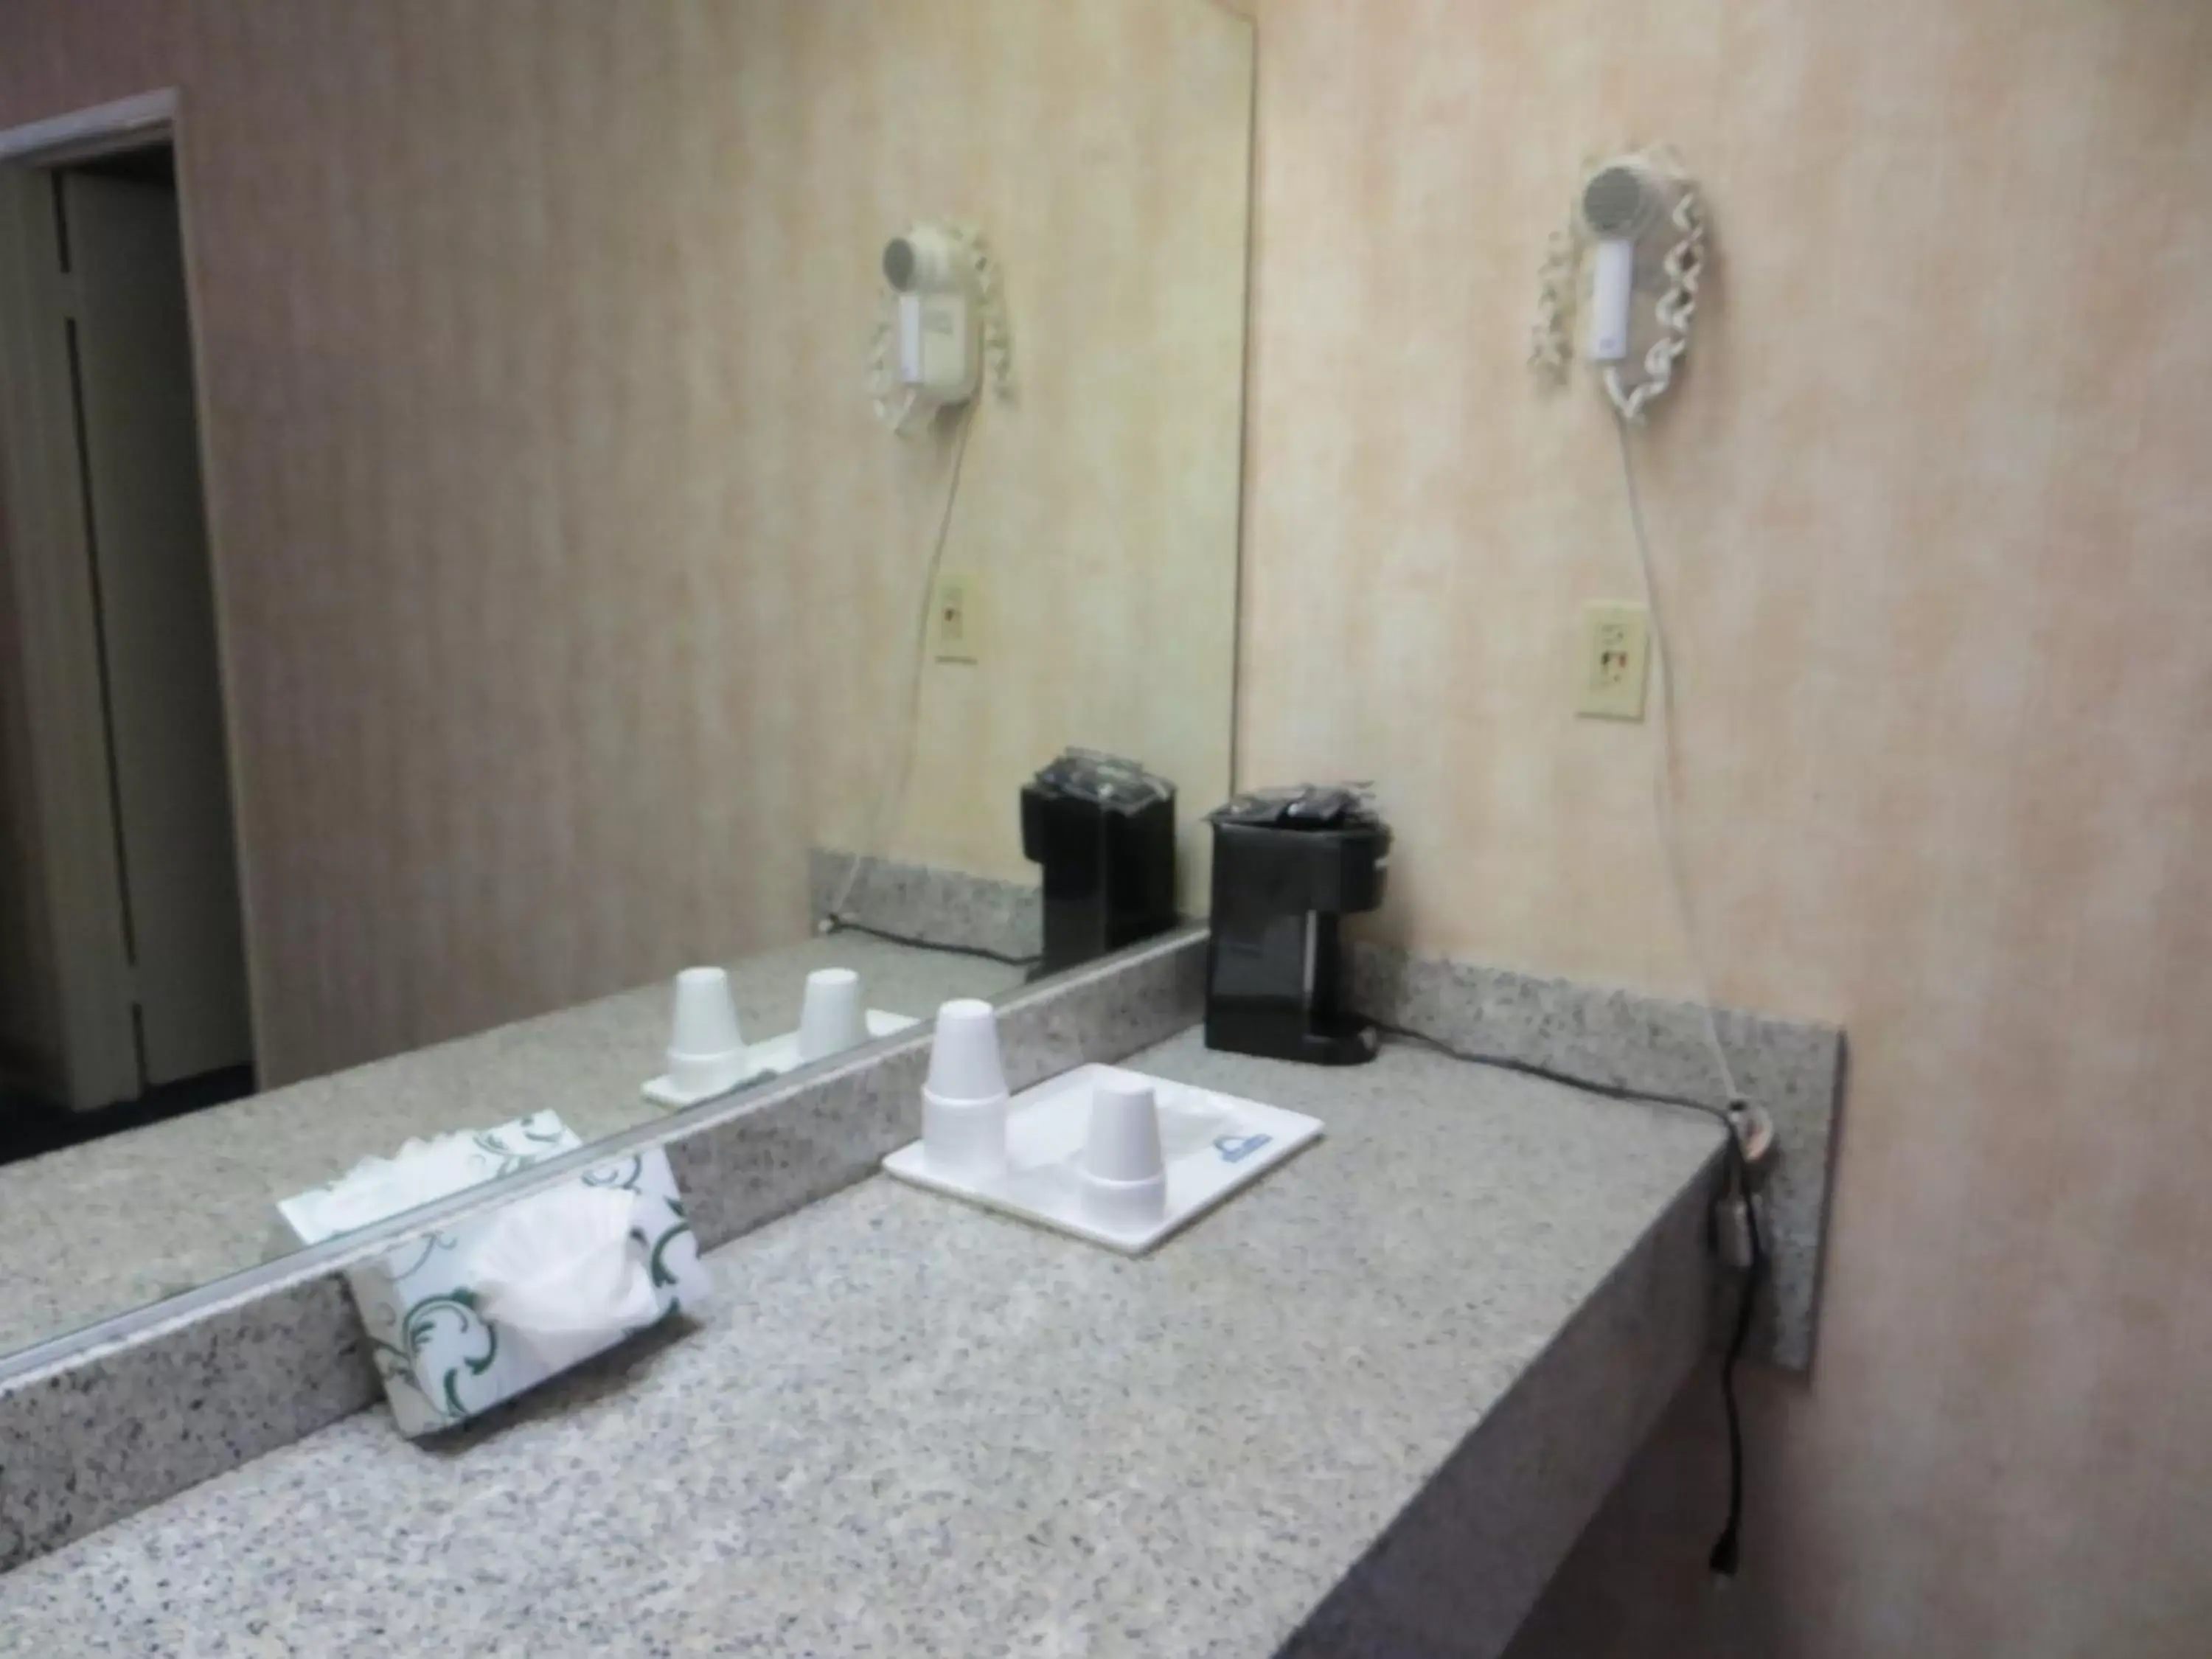 Bathroom in Days Inn by Wyndham Anaheim West